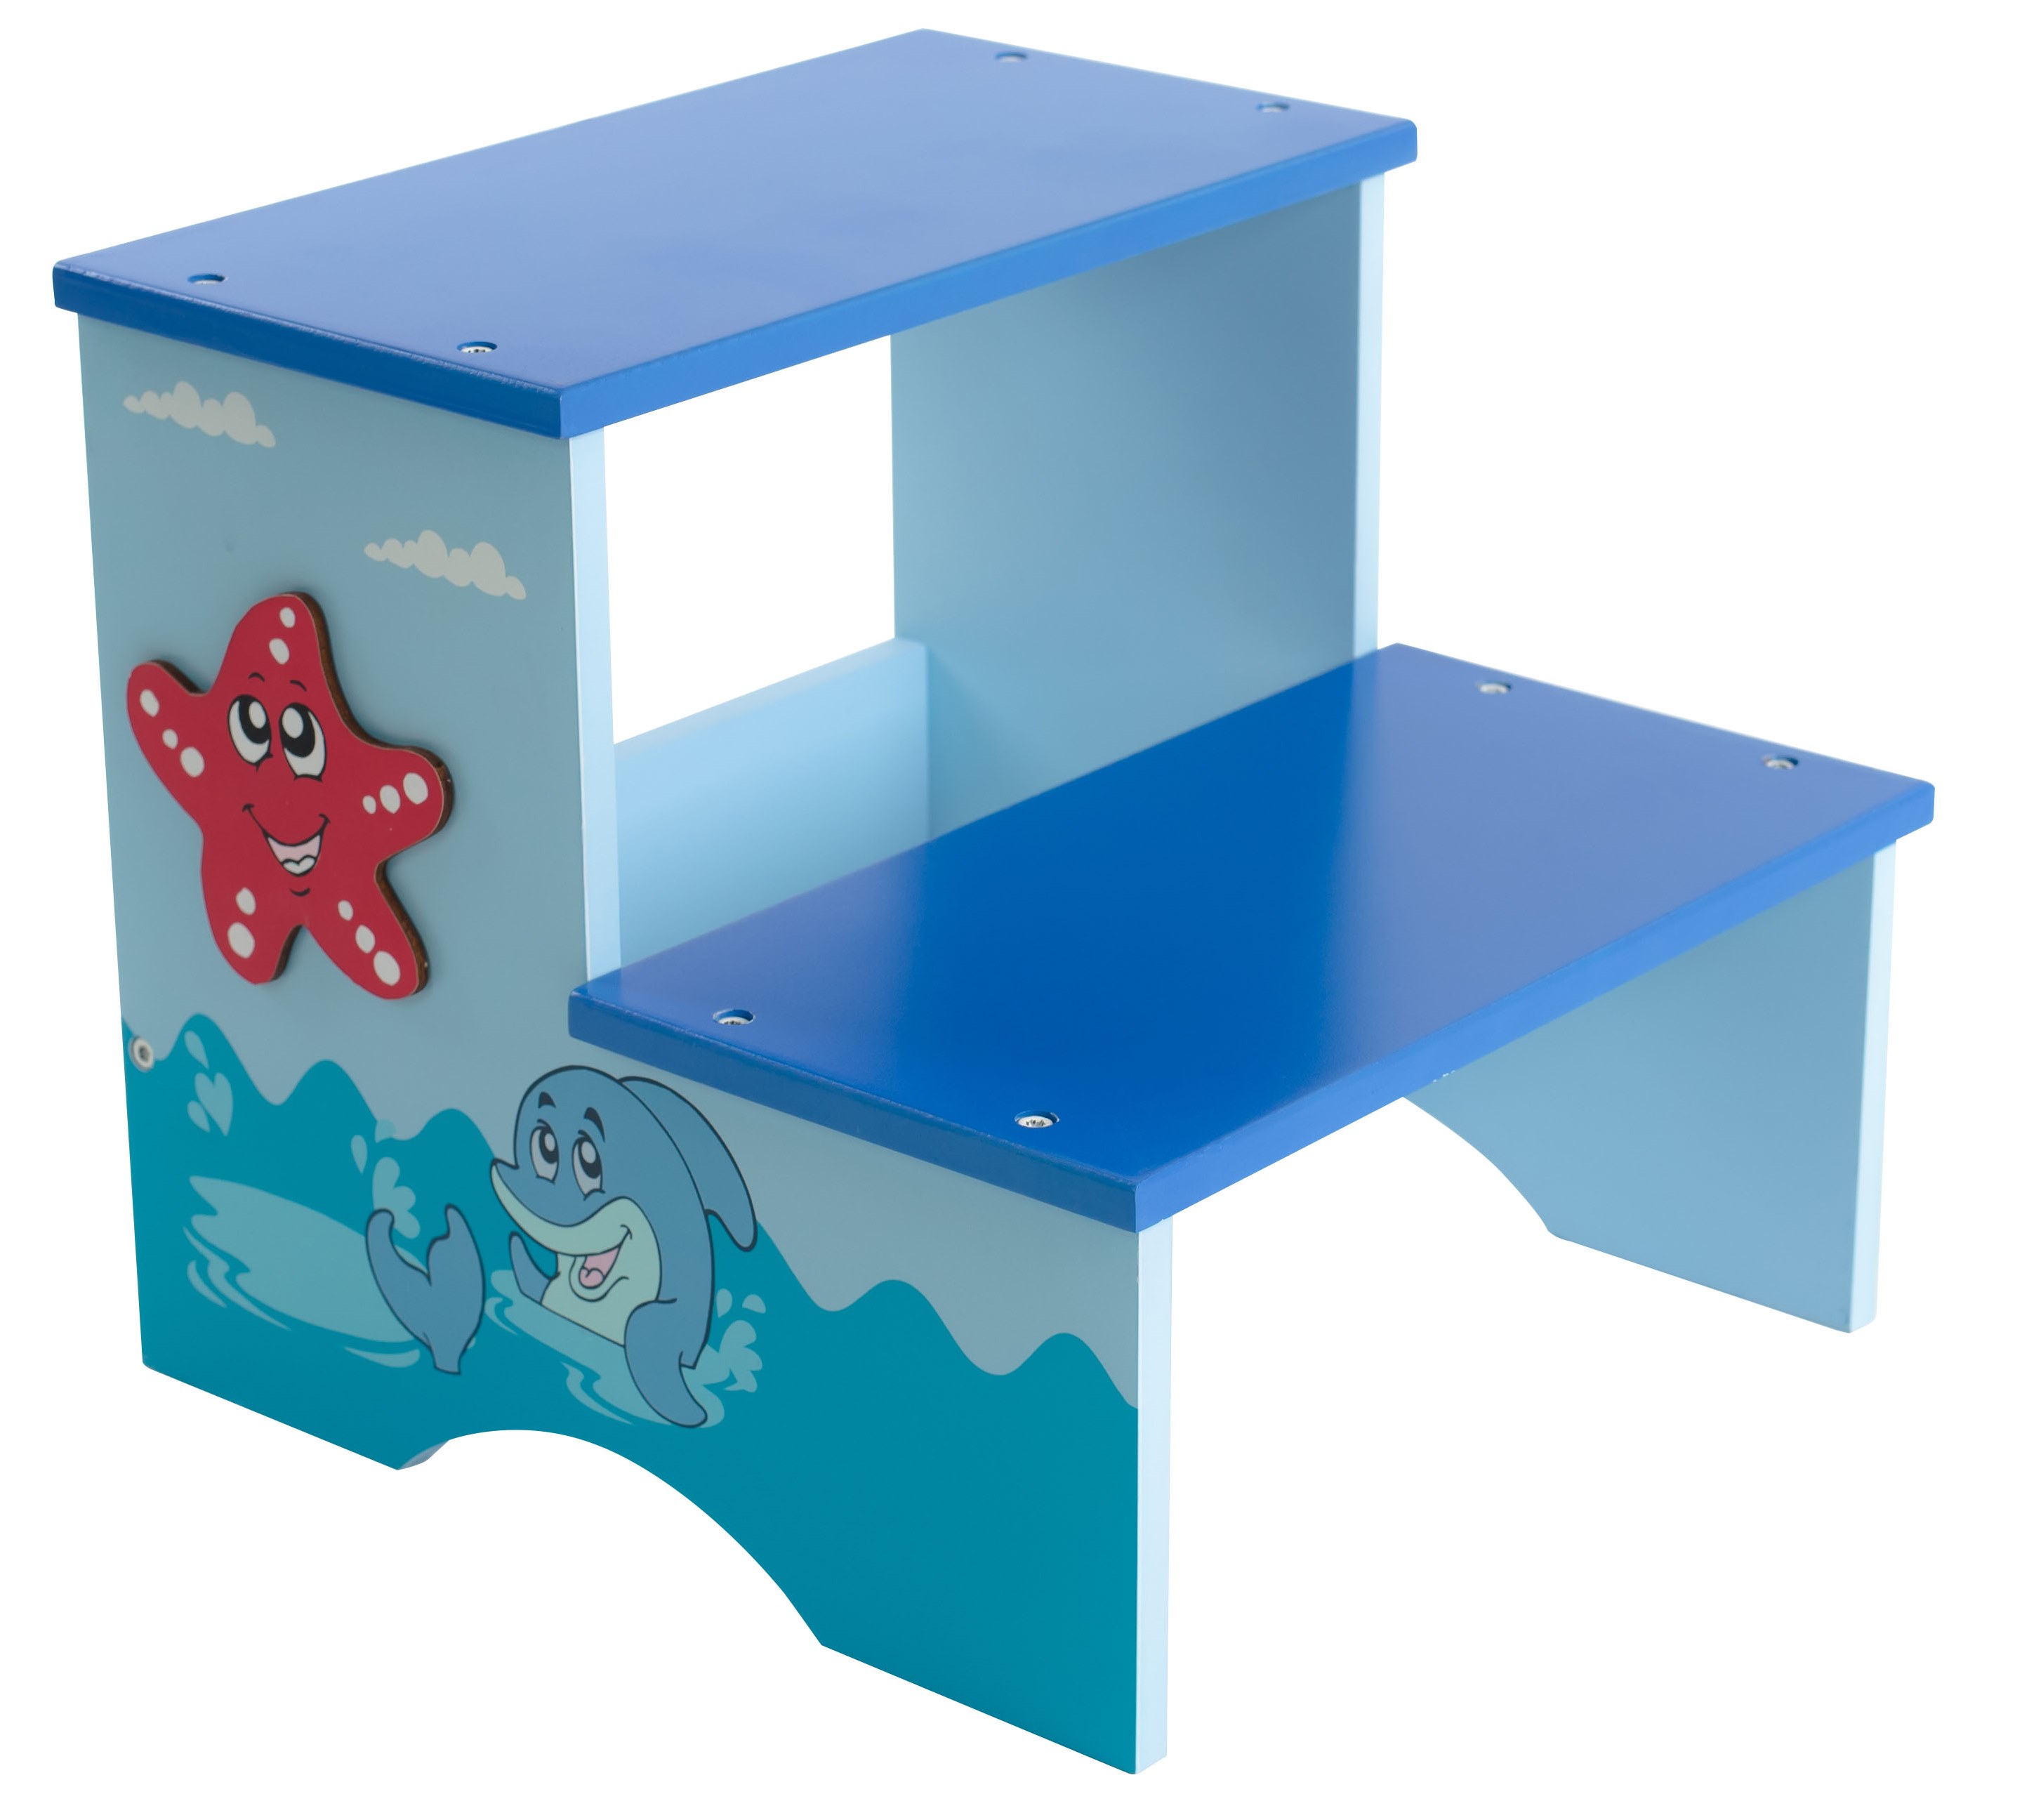 דרגש / שרפרף עץ לילדים מעץ, צבע כחול עם דמות כוכב ים, מושלם לעיצוב חדר ילדים